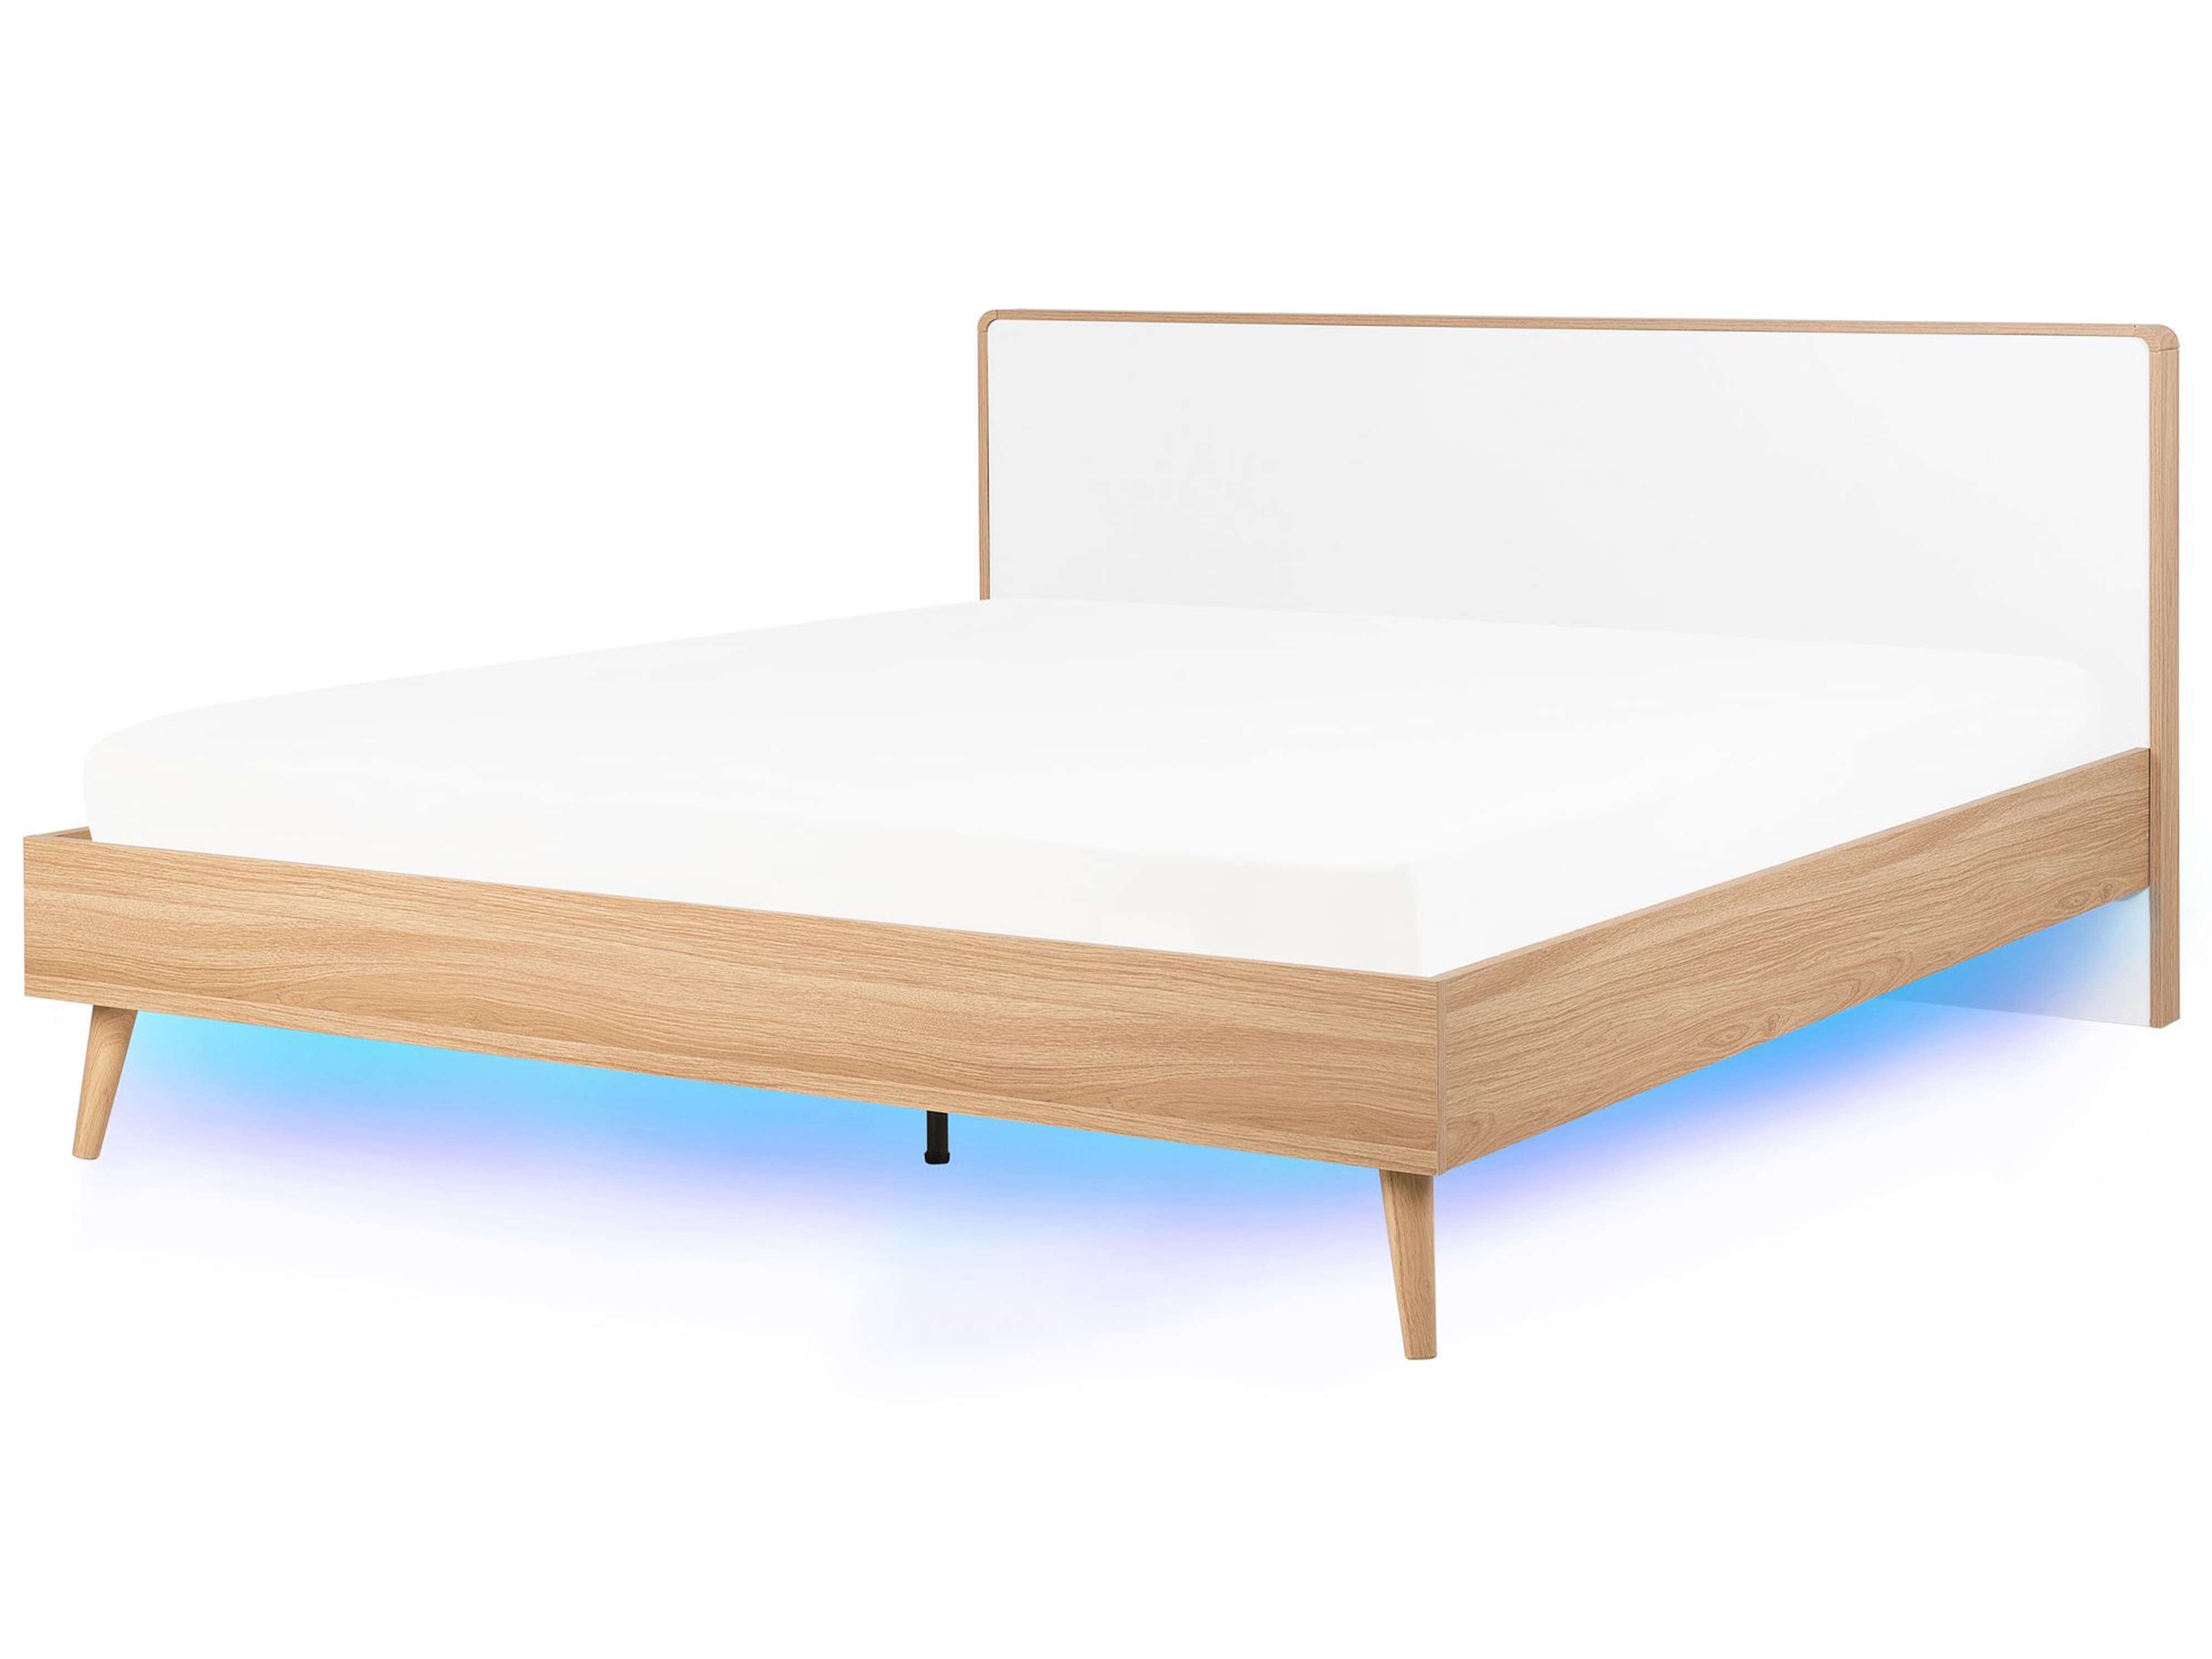 Eu Super King Size Bed Led Light Wood, Super King Bed Frame No Headboard